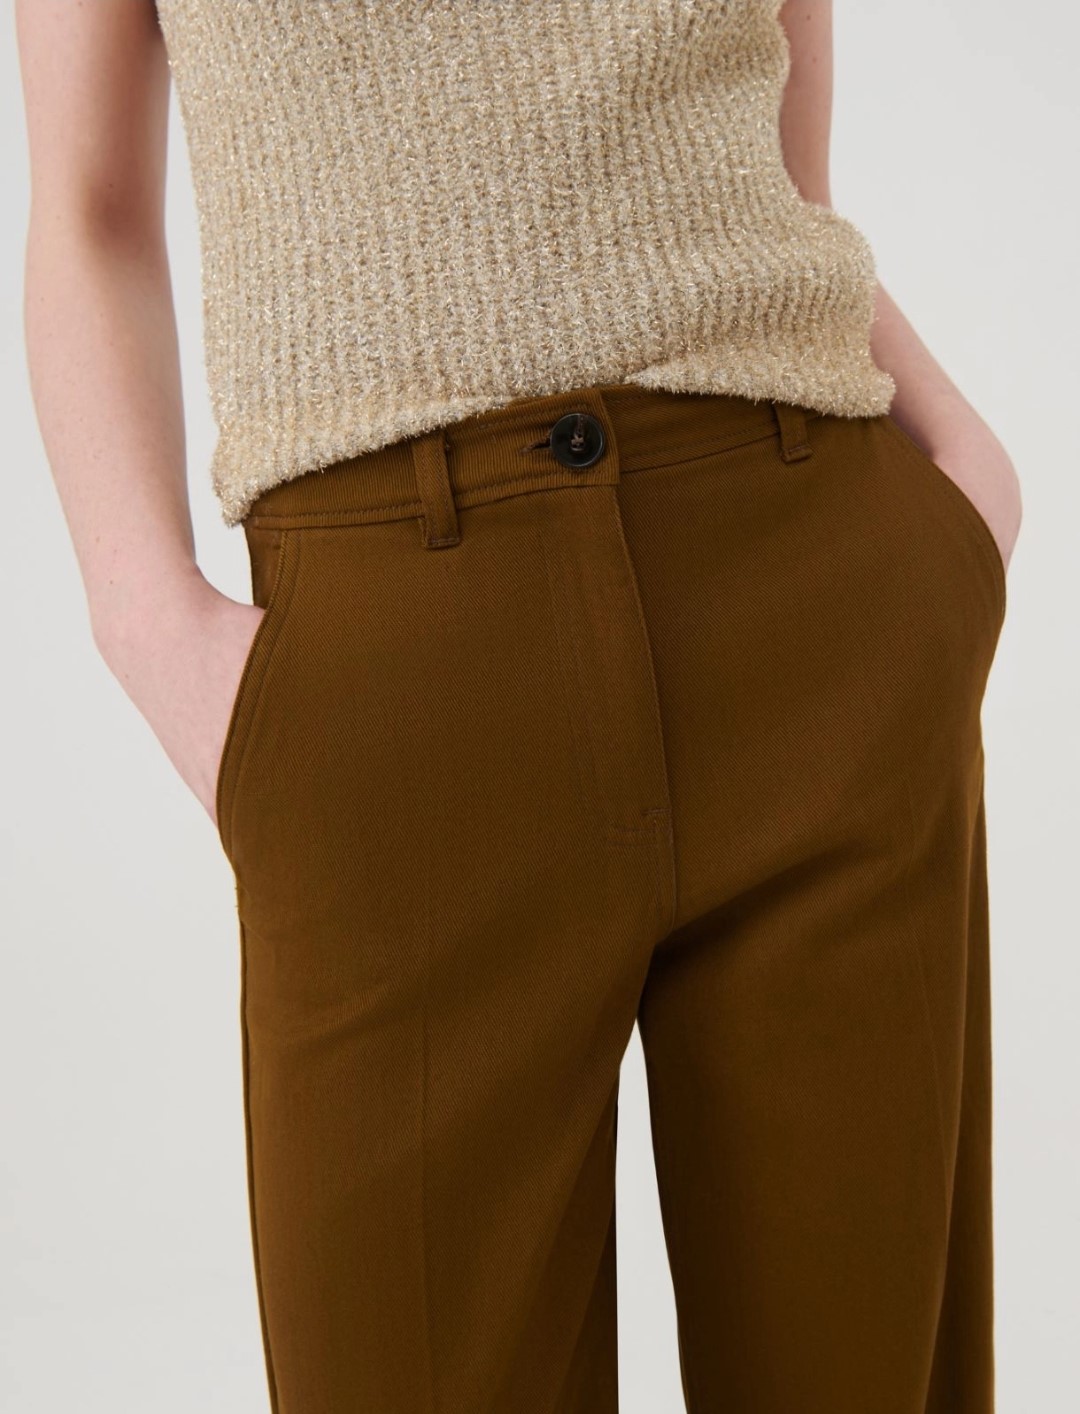 Wider Legged Cotton Trousers (Marella)